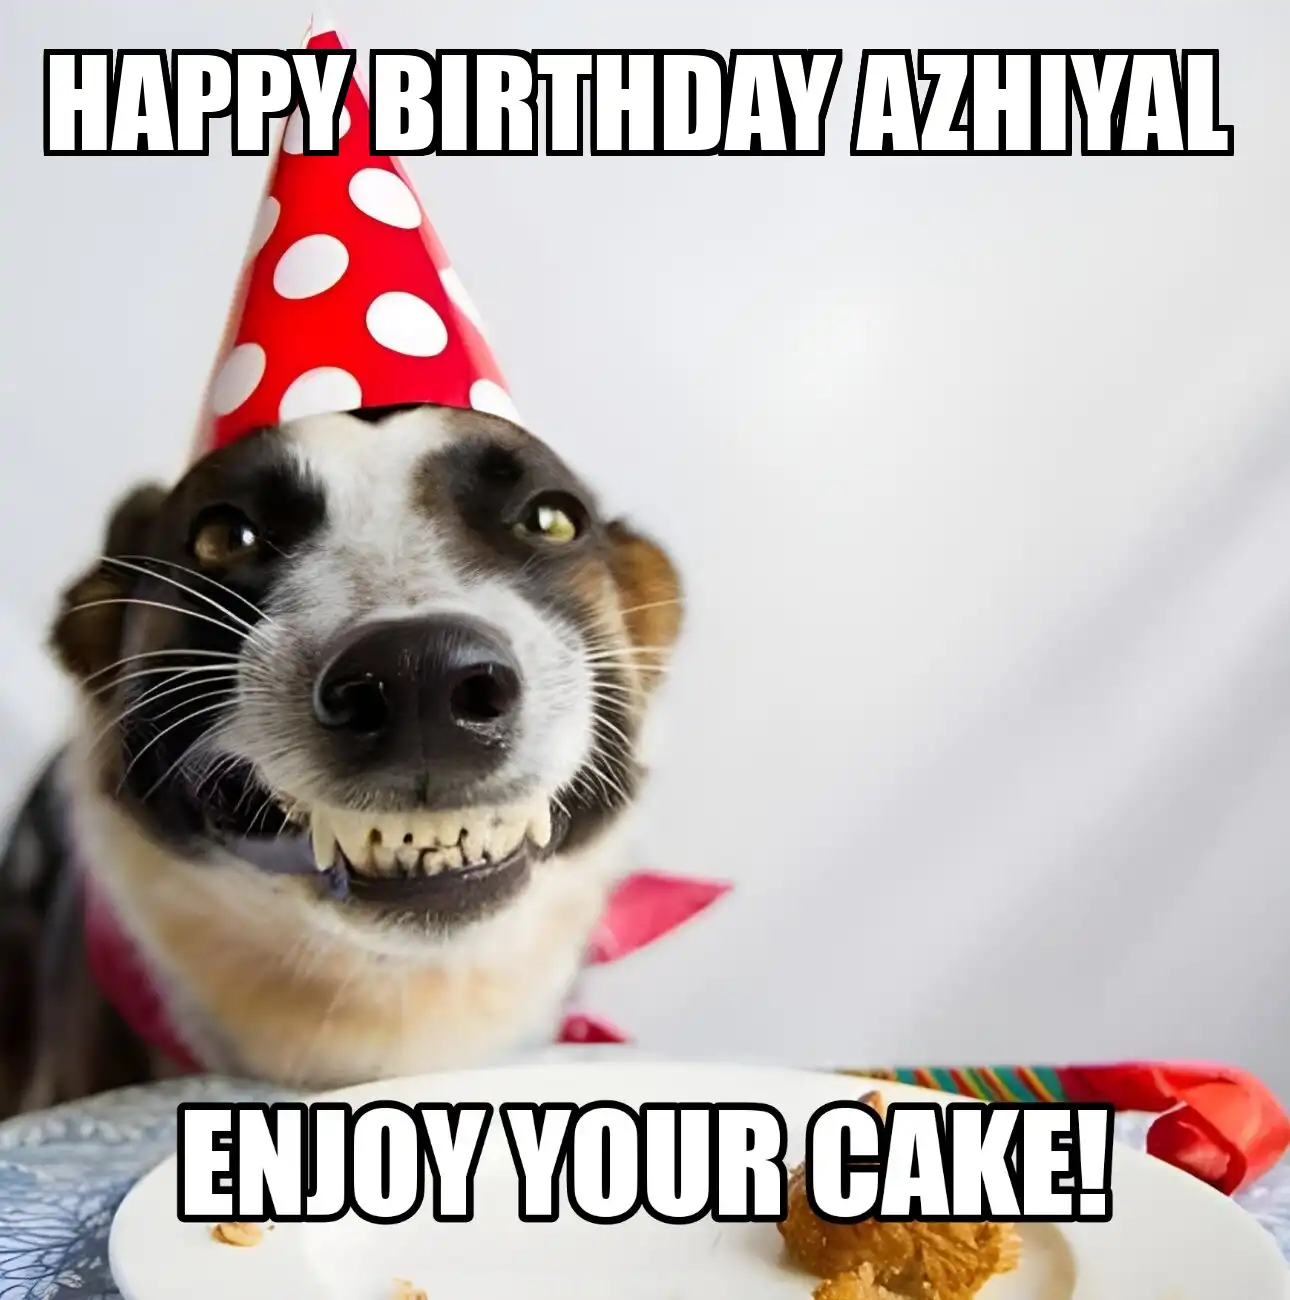 Happy Birthday Azhiyal Enjoy Your Cake Dog Meme